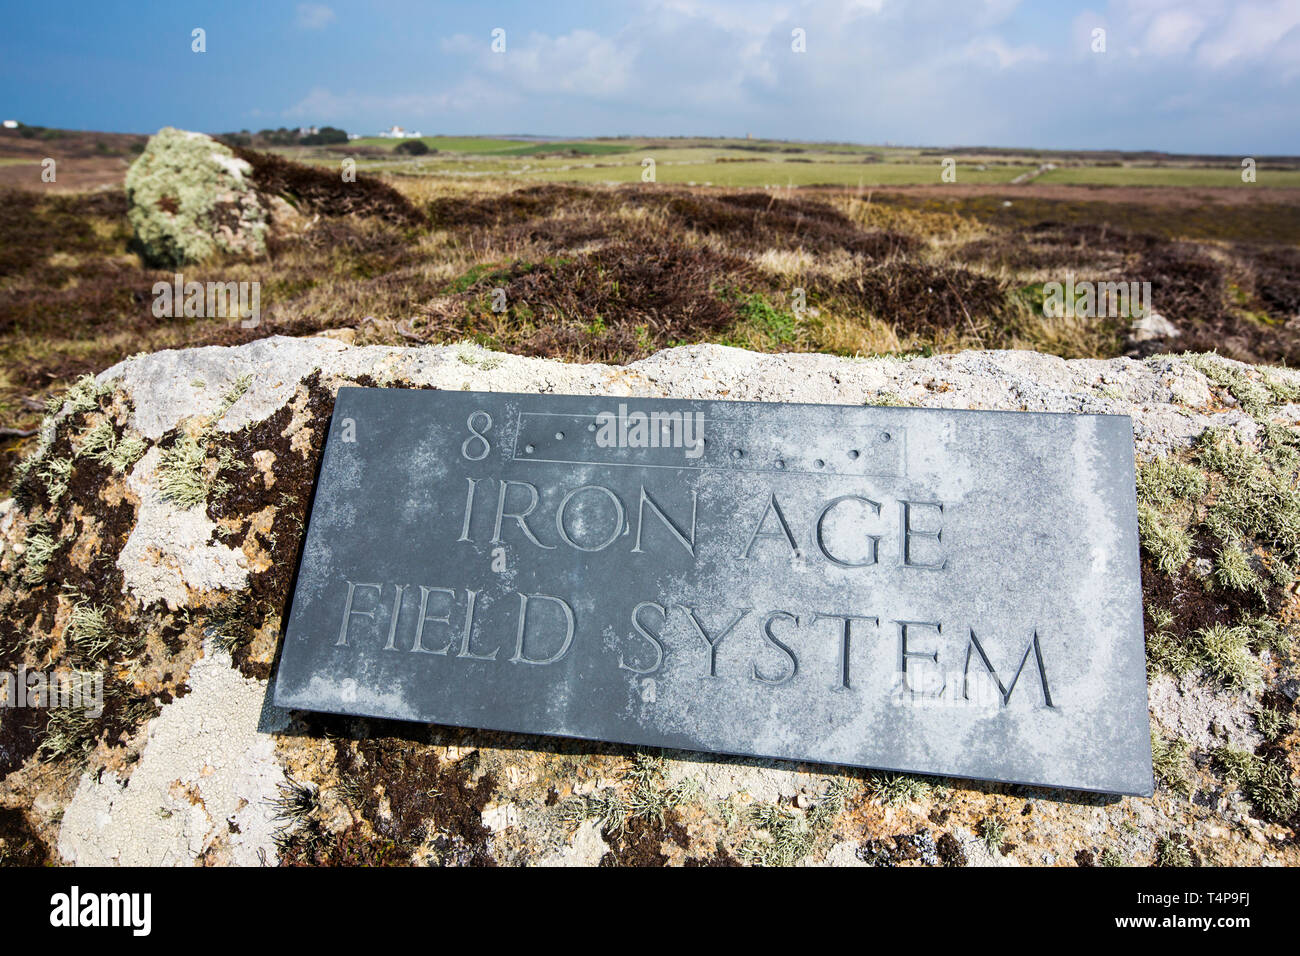 Un sistema en el campo de la edad de hierro de Lands End, Cornualles, en el Reino Unido. Foto de stock